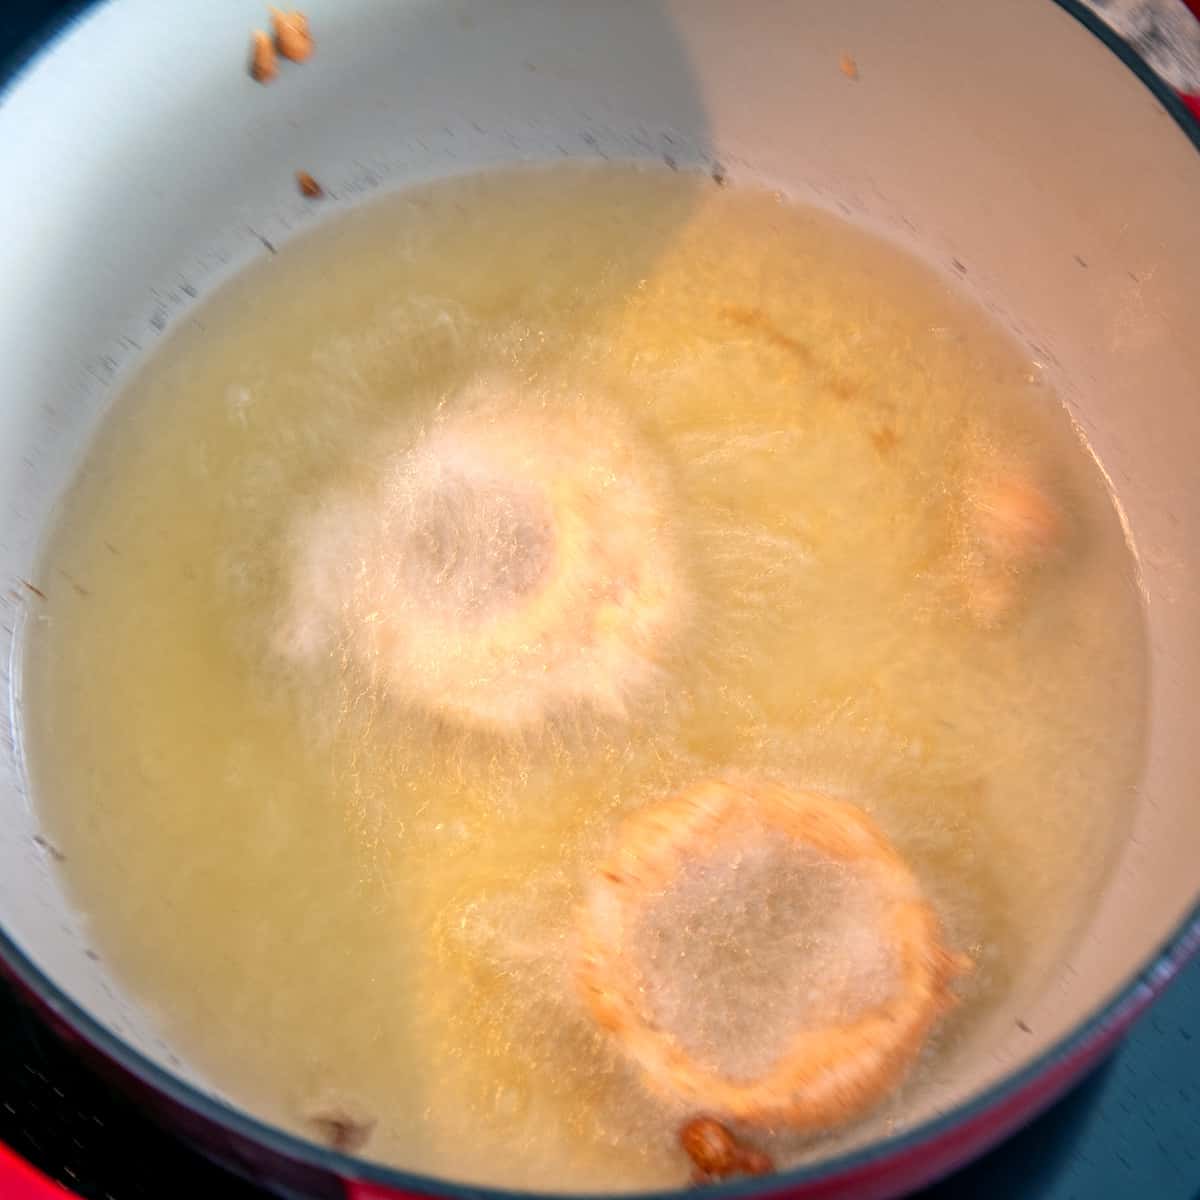 Two onion rings frying in oil.